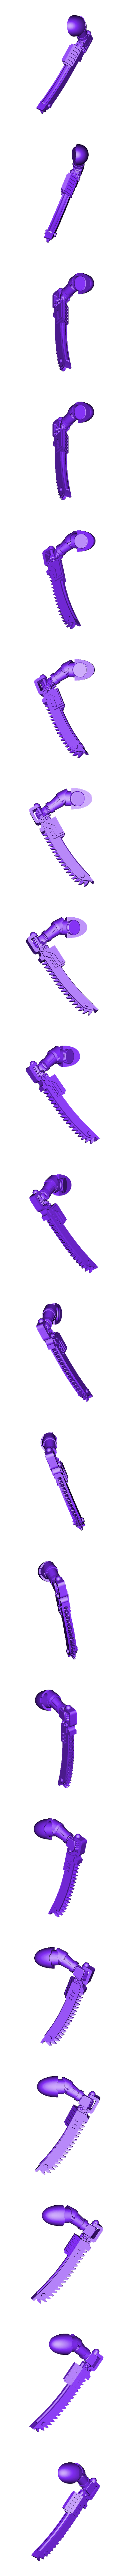 ChainSword_WithArm3.stl Файл STL Оружие ближнего боя Exo Armour・3D-печатная модель для загрузки, Artisans_of_Vaul